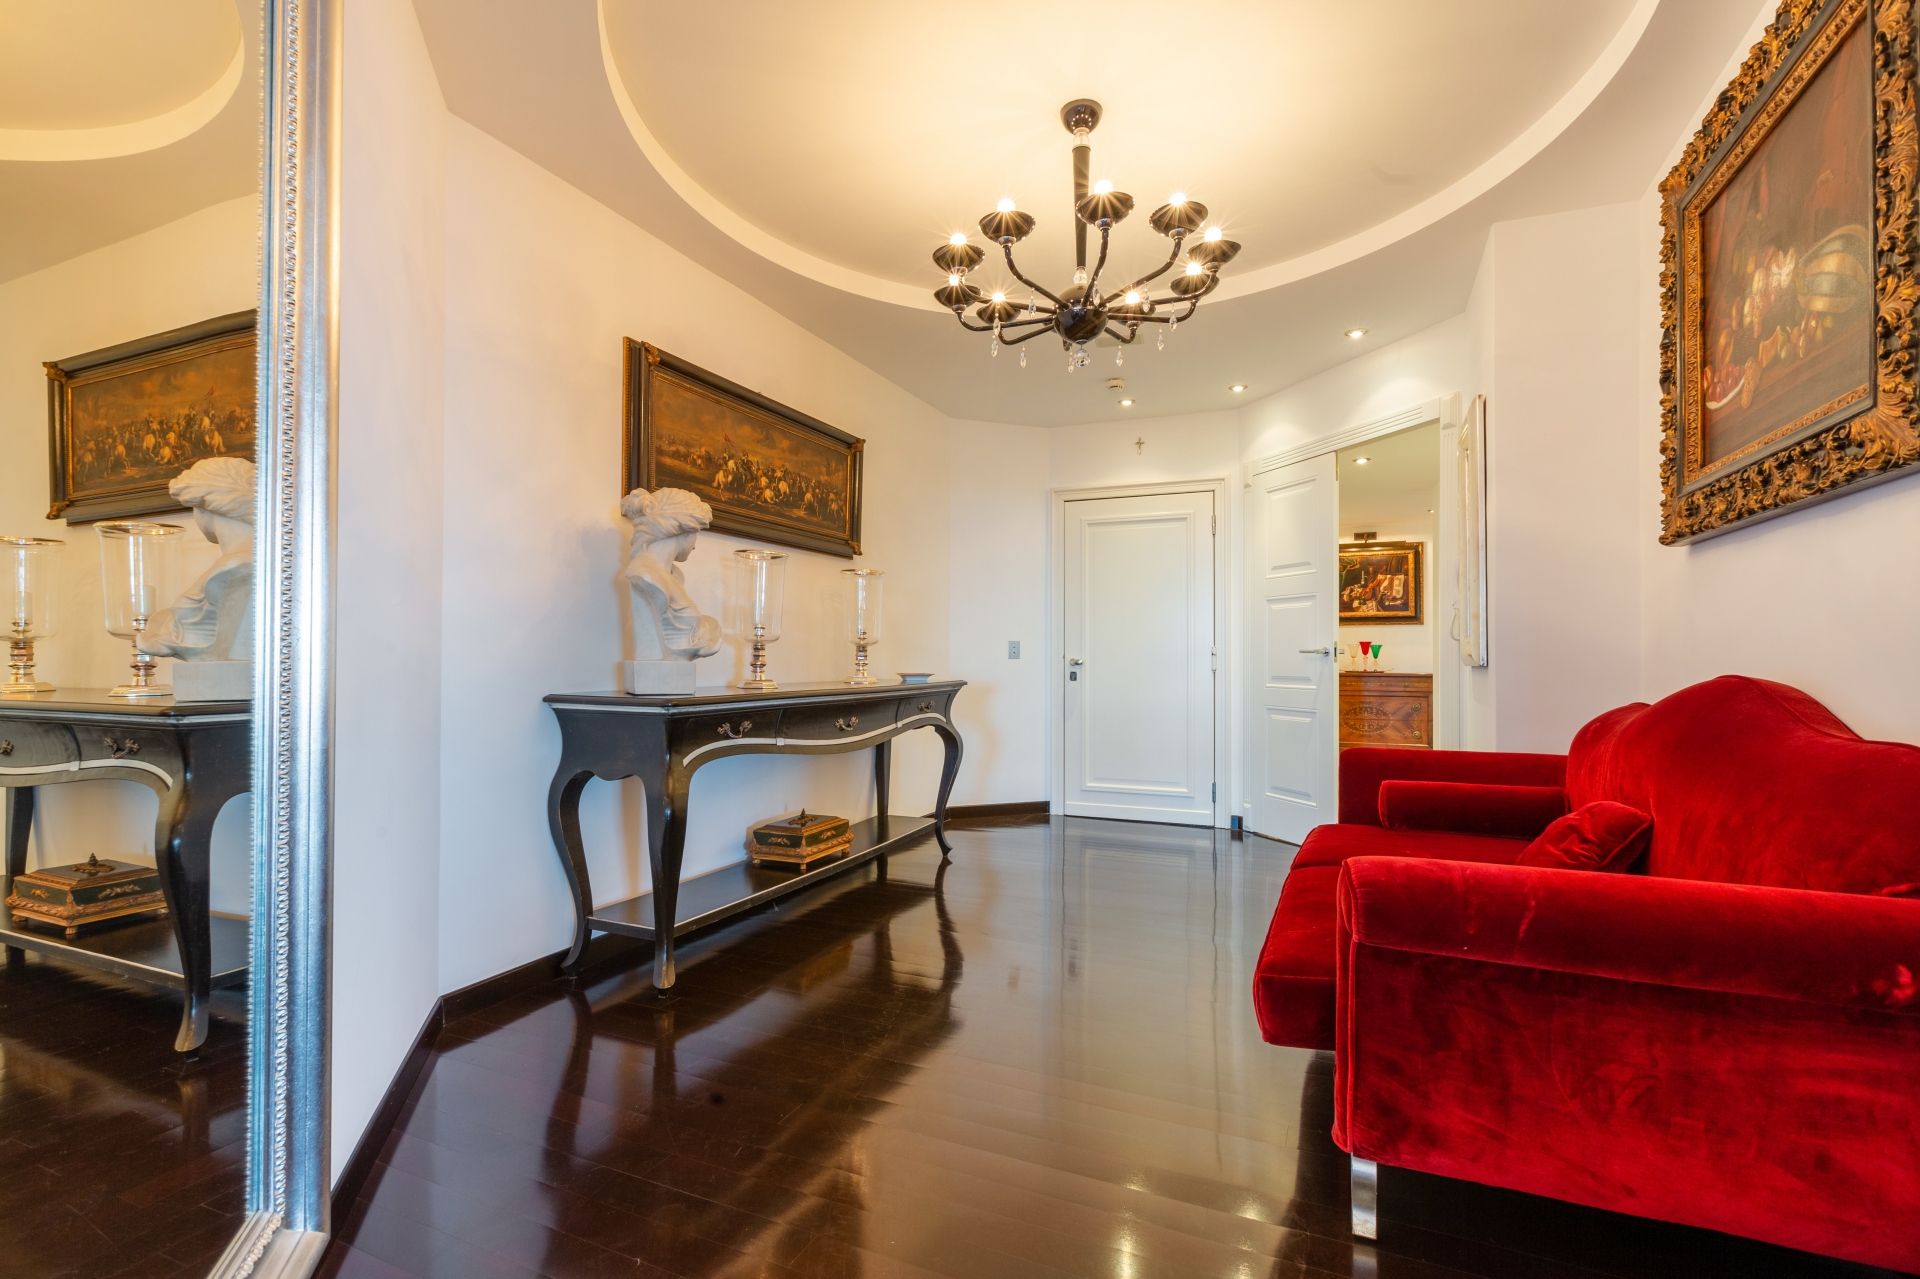 Dotta Appartement de 5 pieces a vendre - PARC SAINT ROMAN - La Rousse - Monaco - img16